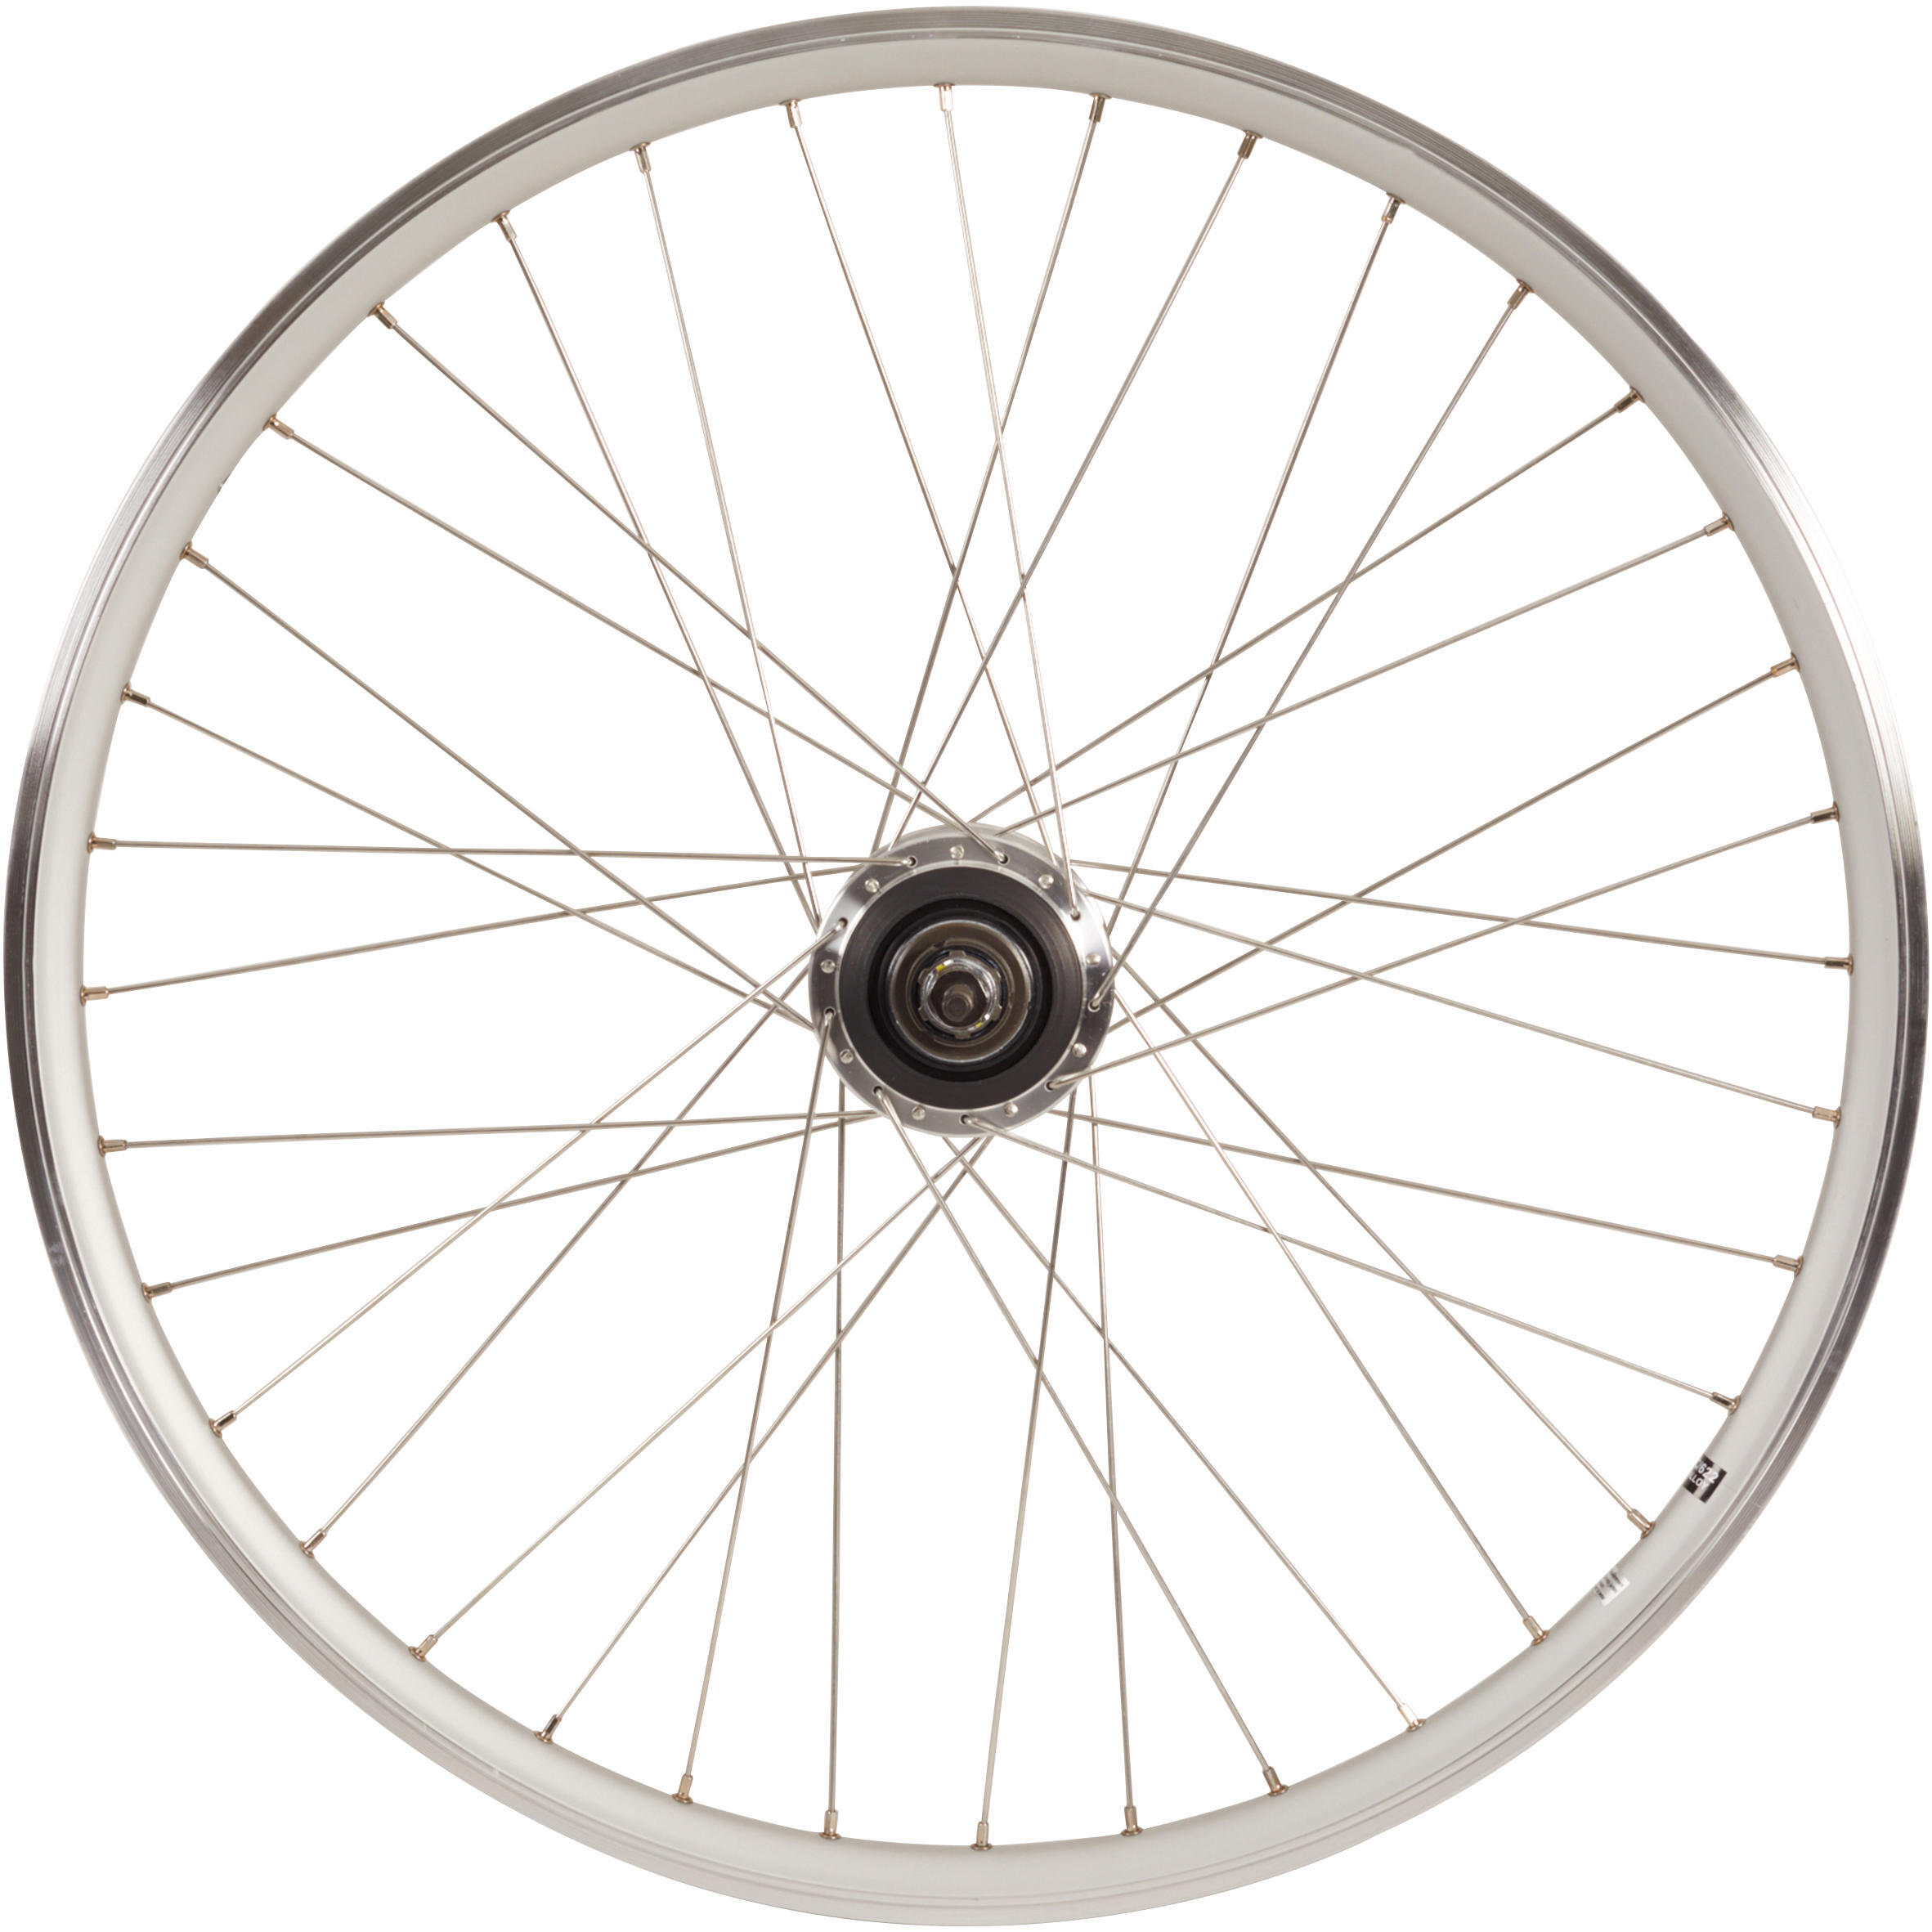 цена Заднее колесо крыльчатки 28-дюймовый обод для городского велосипеда с двойными стенками Nexus7 серебристый Elops 920, серебро